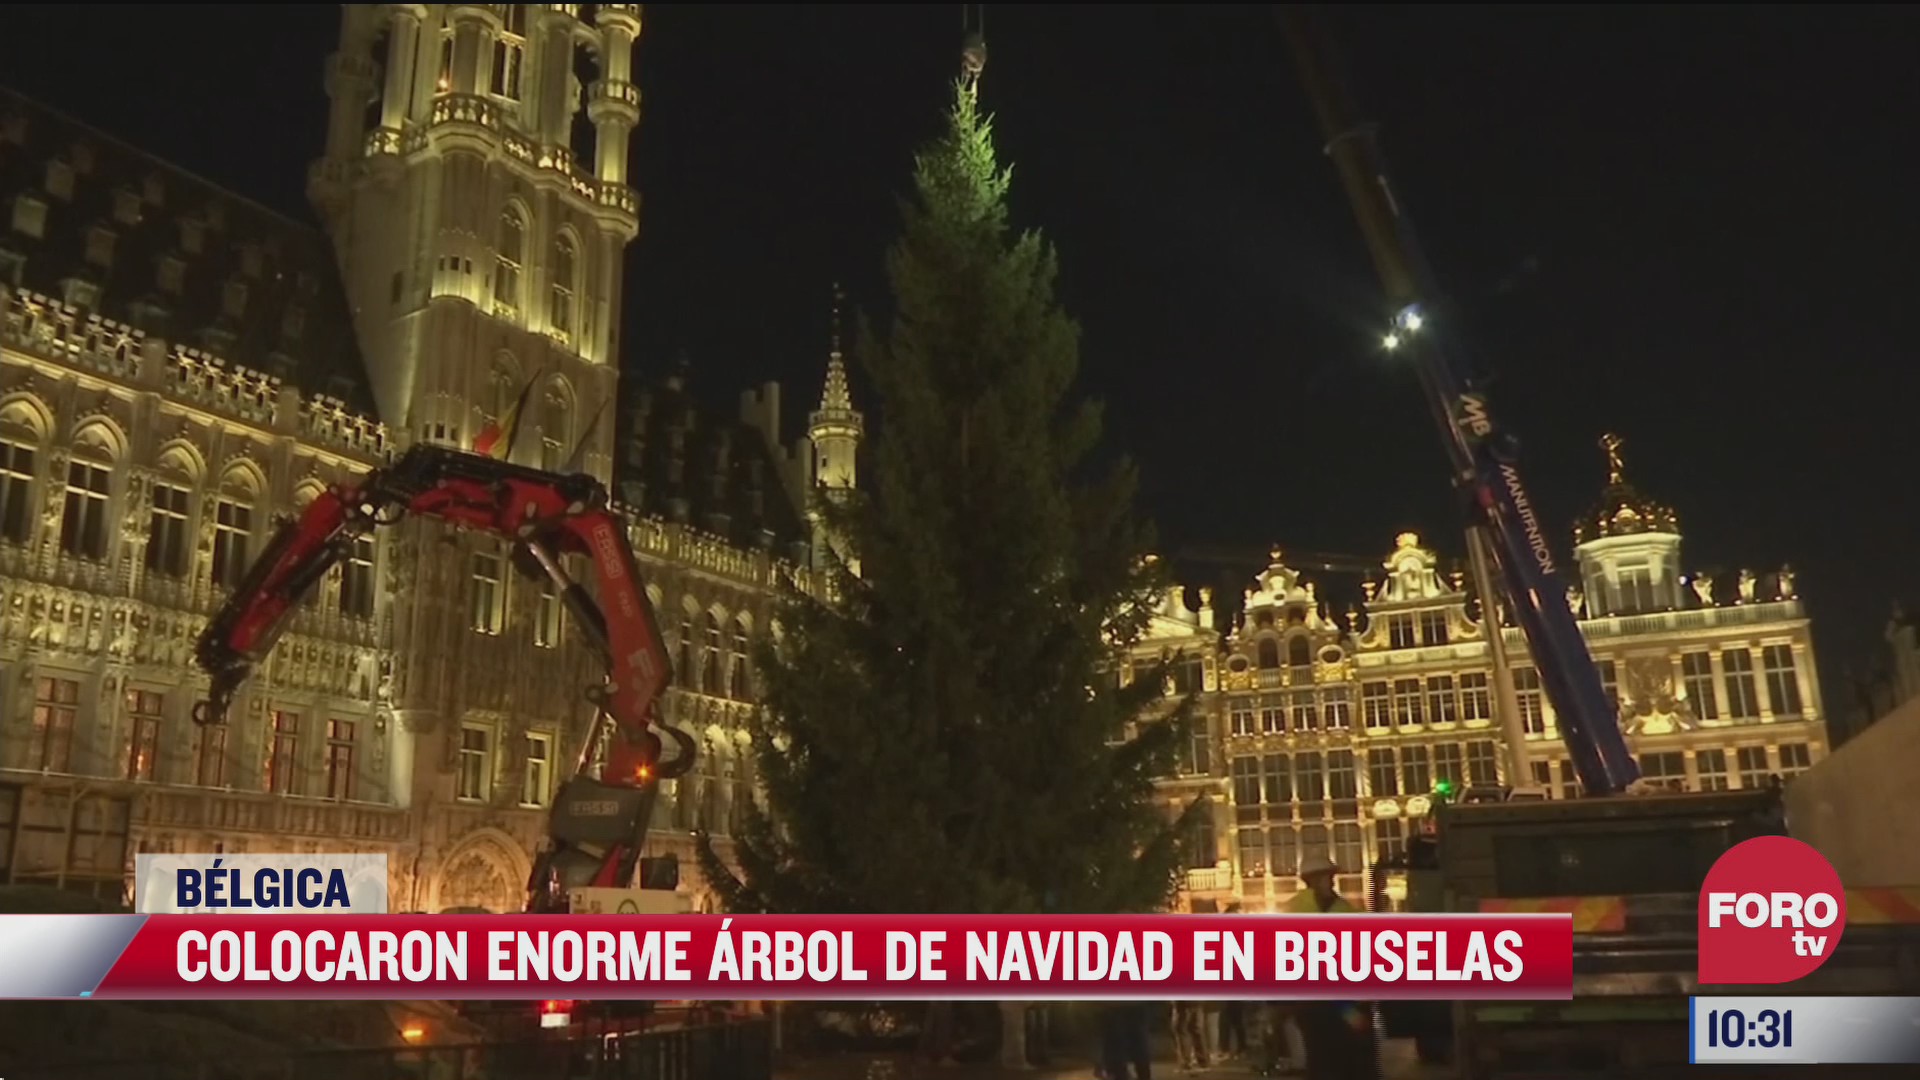 enorme arbol de navidad adorna belgica